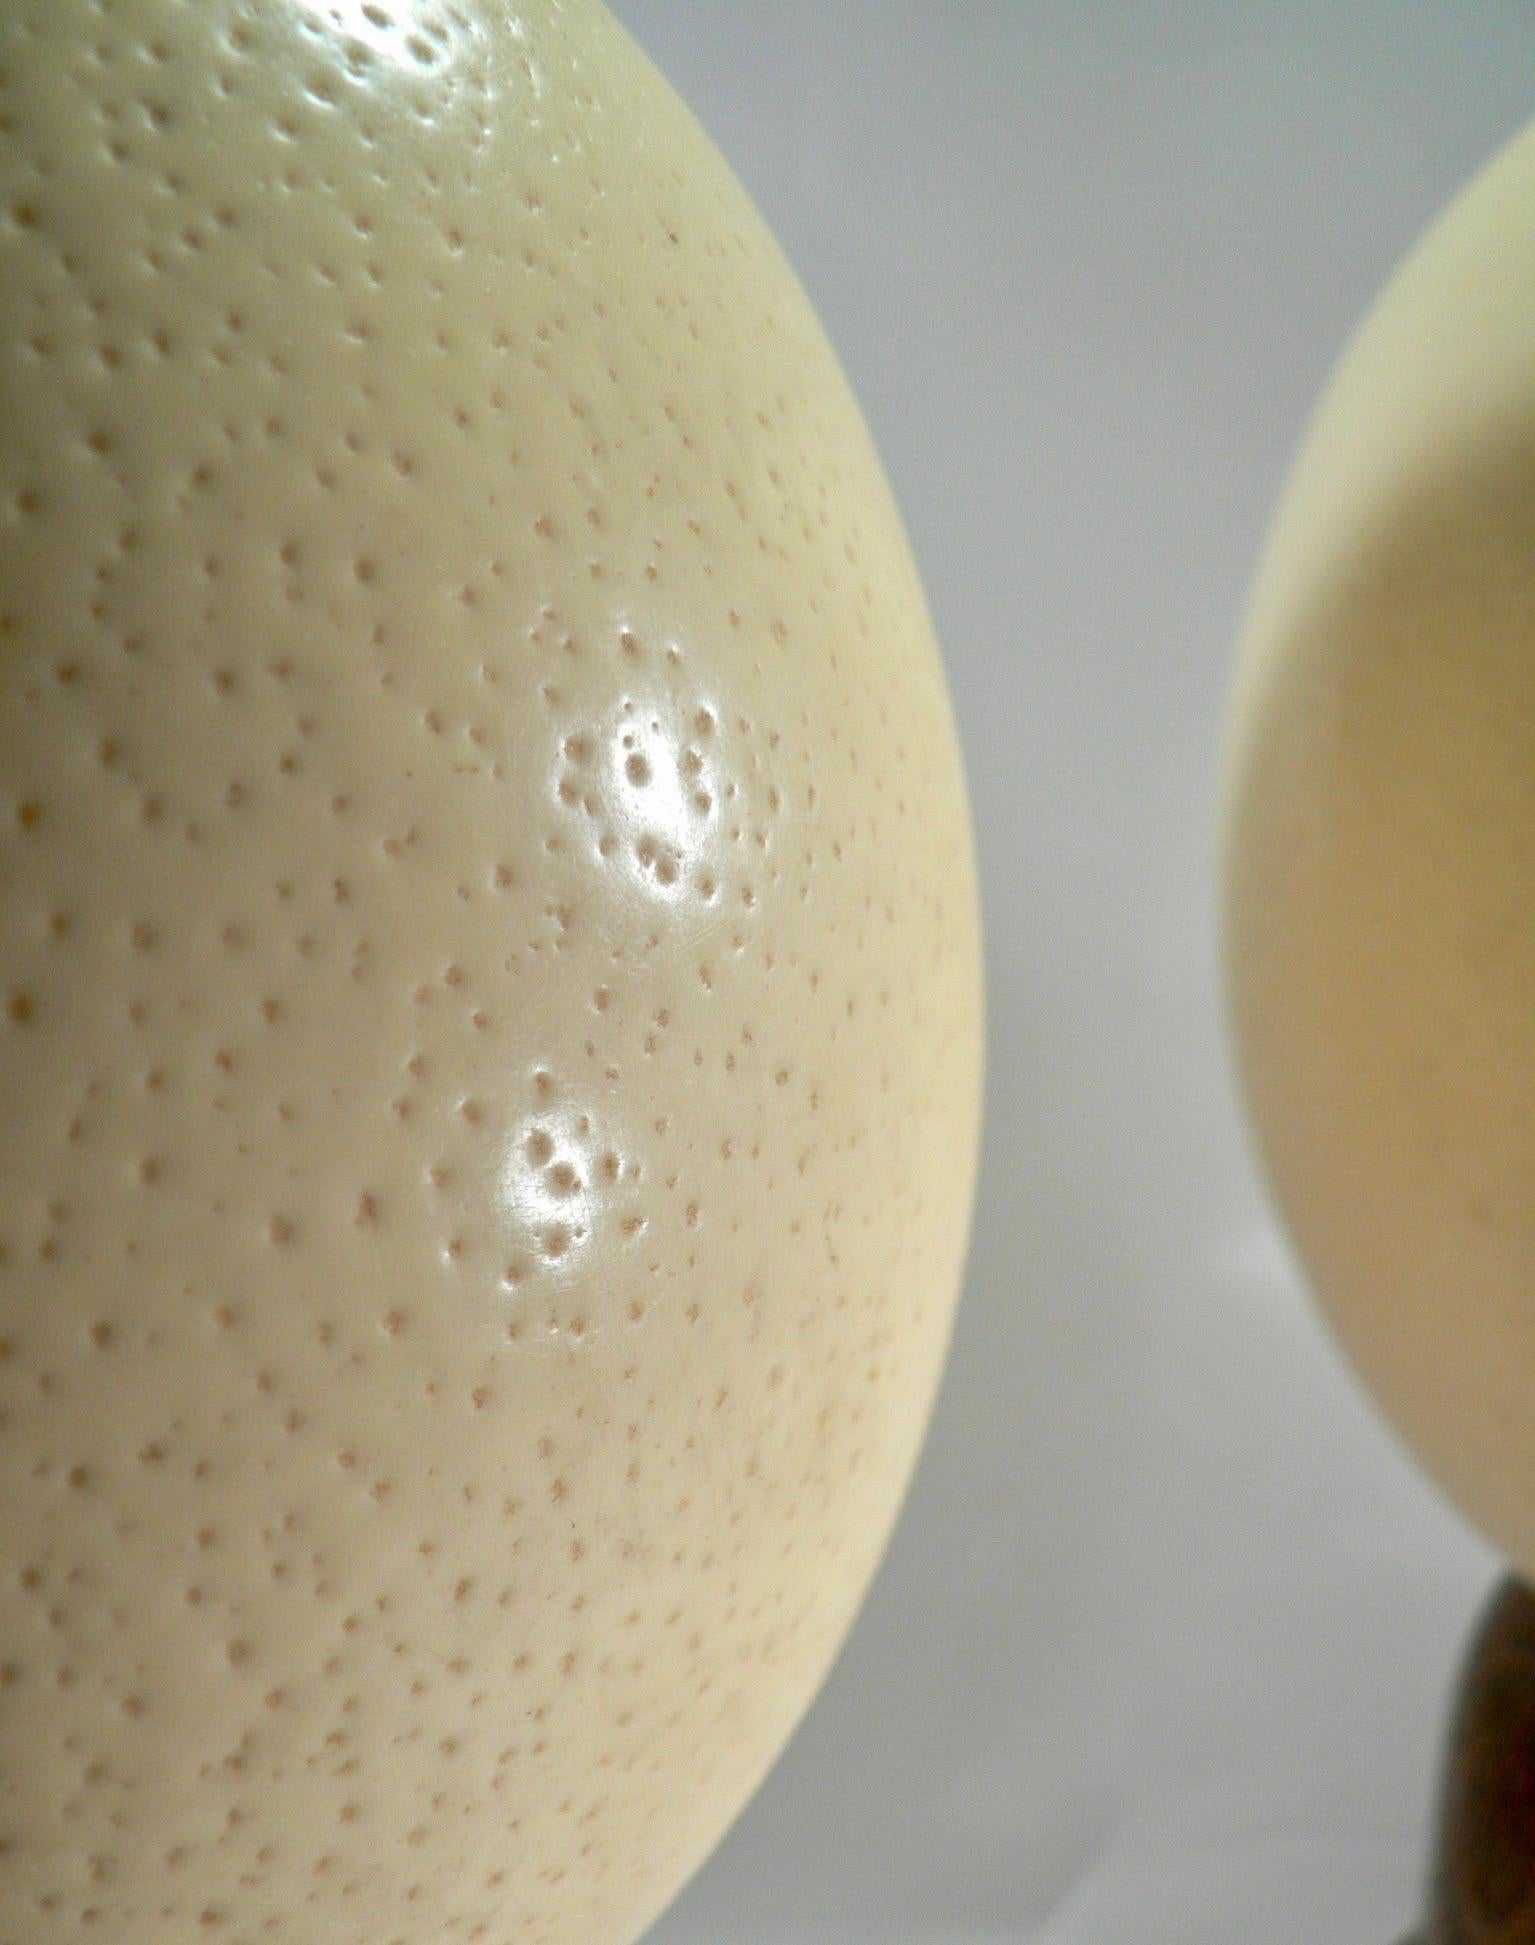 Ein Paar geleerte Straußeneier mit gedrechselten massiven Eichensockeln aus dem 19. Jahrhundert, die aus einem Kuriositätenkabinett stammen,

Straußeneier beeindrucken vor allem durch ihre imposante Größe und einzigartige Beschaffenheit. Ihre